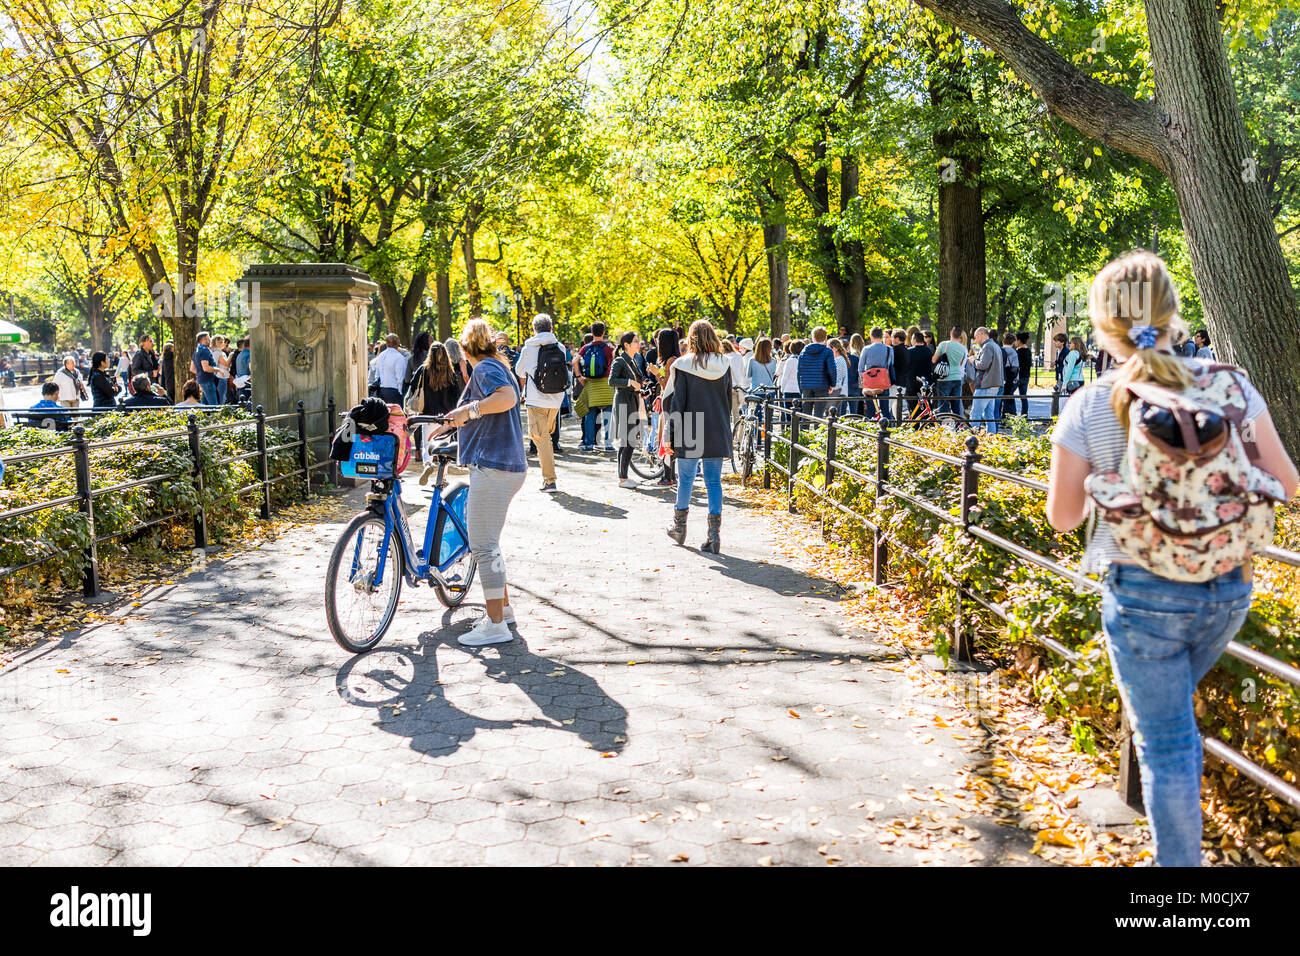 La città di New York, Stati Uniti d'America - 28 Ottobre 2017: Manhattan NYC Central park, la folla di persone in piedi a guardare street performance sulla giornata di sole, passeggiate Foto Stock